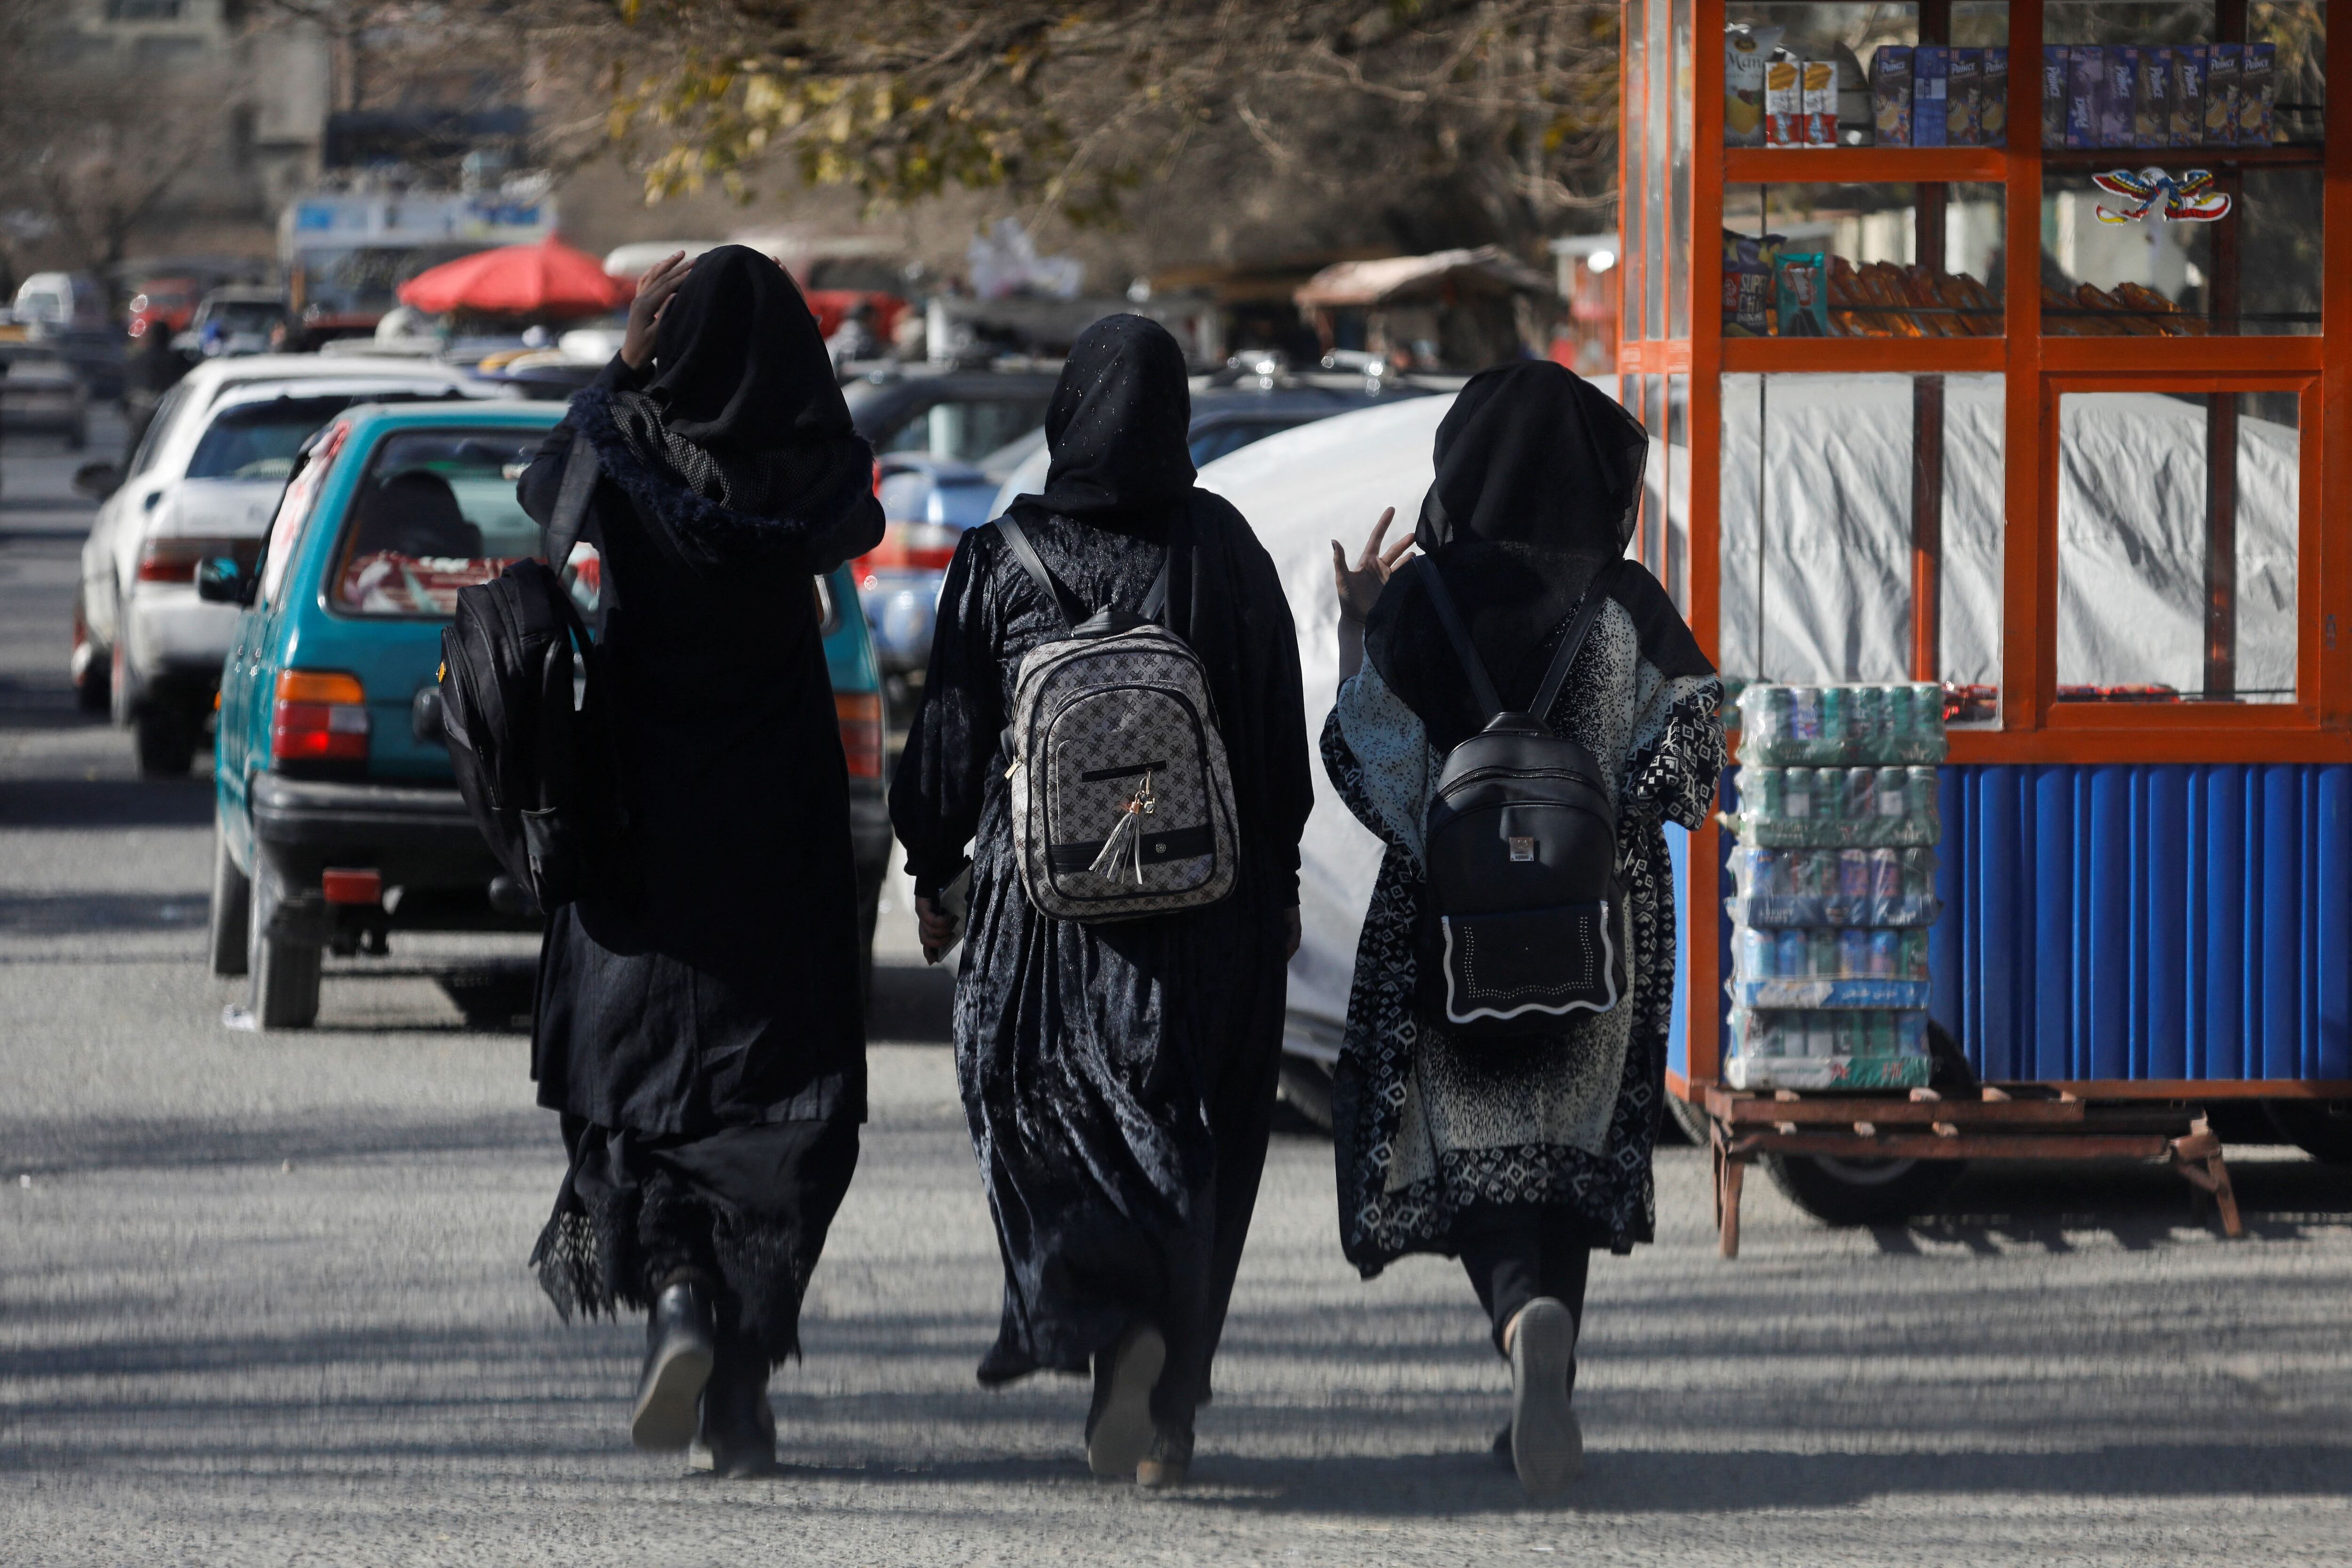 Estudiantes afganas caminan cerca de la Universidad de Kabul en diciembre de 2022, cuando los talibanes aún no habían expulsado a las mujeres de la educación superior. (REUTERS/Ali Khara)